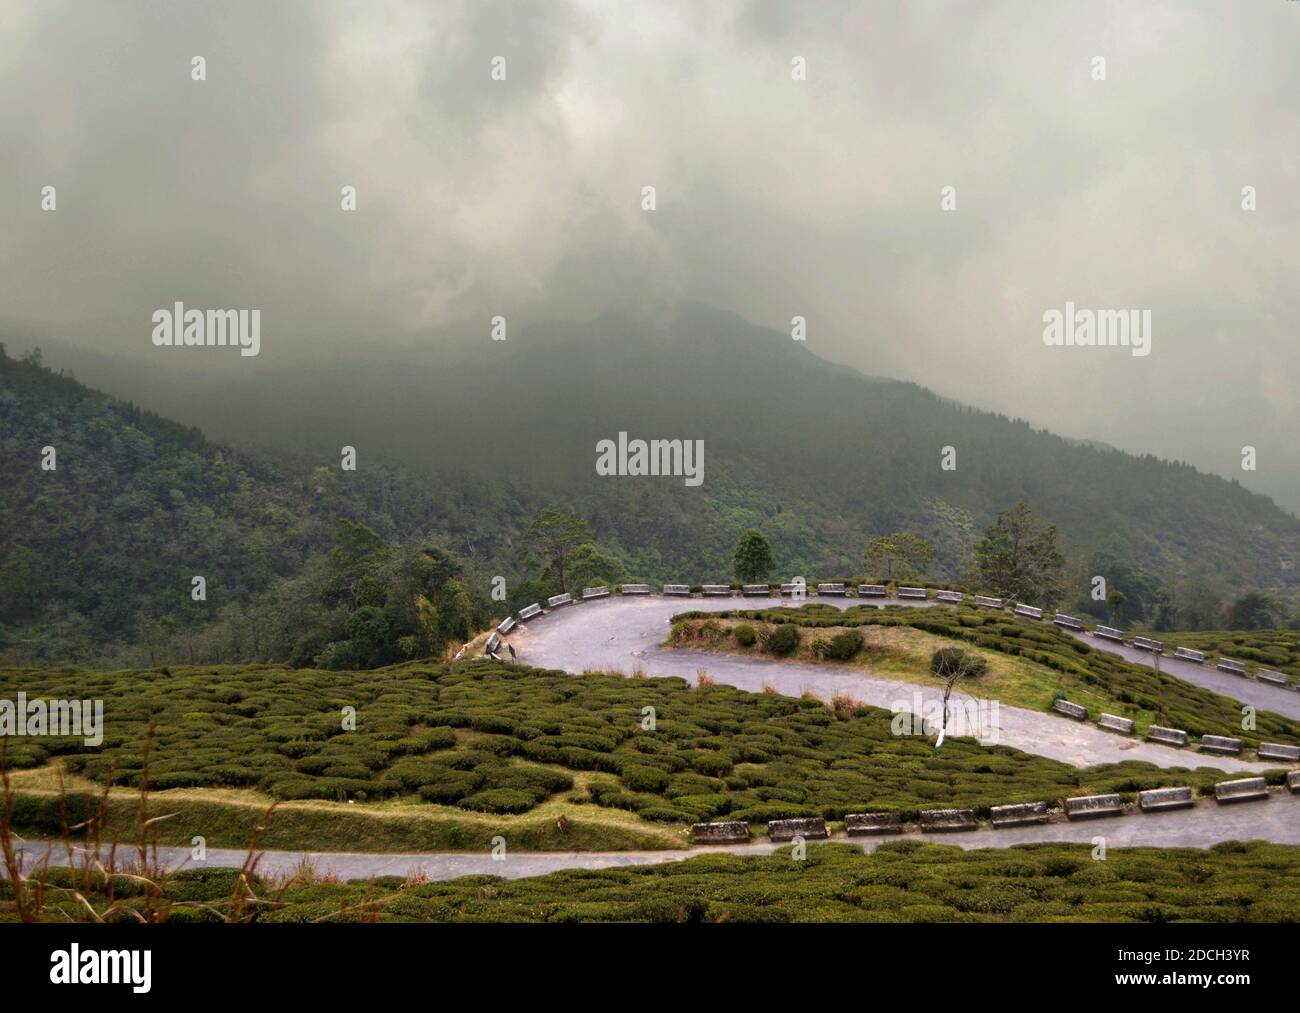 Route de montagne courbée à travers les plantations de thé de Darjeeling. Route sinueuse dans les montagnes., Inde Banque D'Images